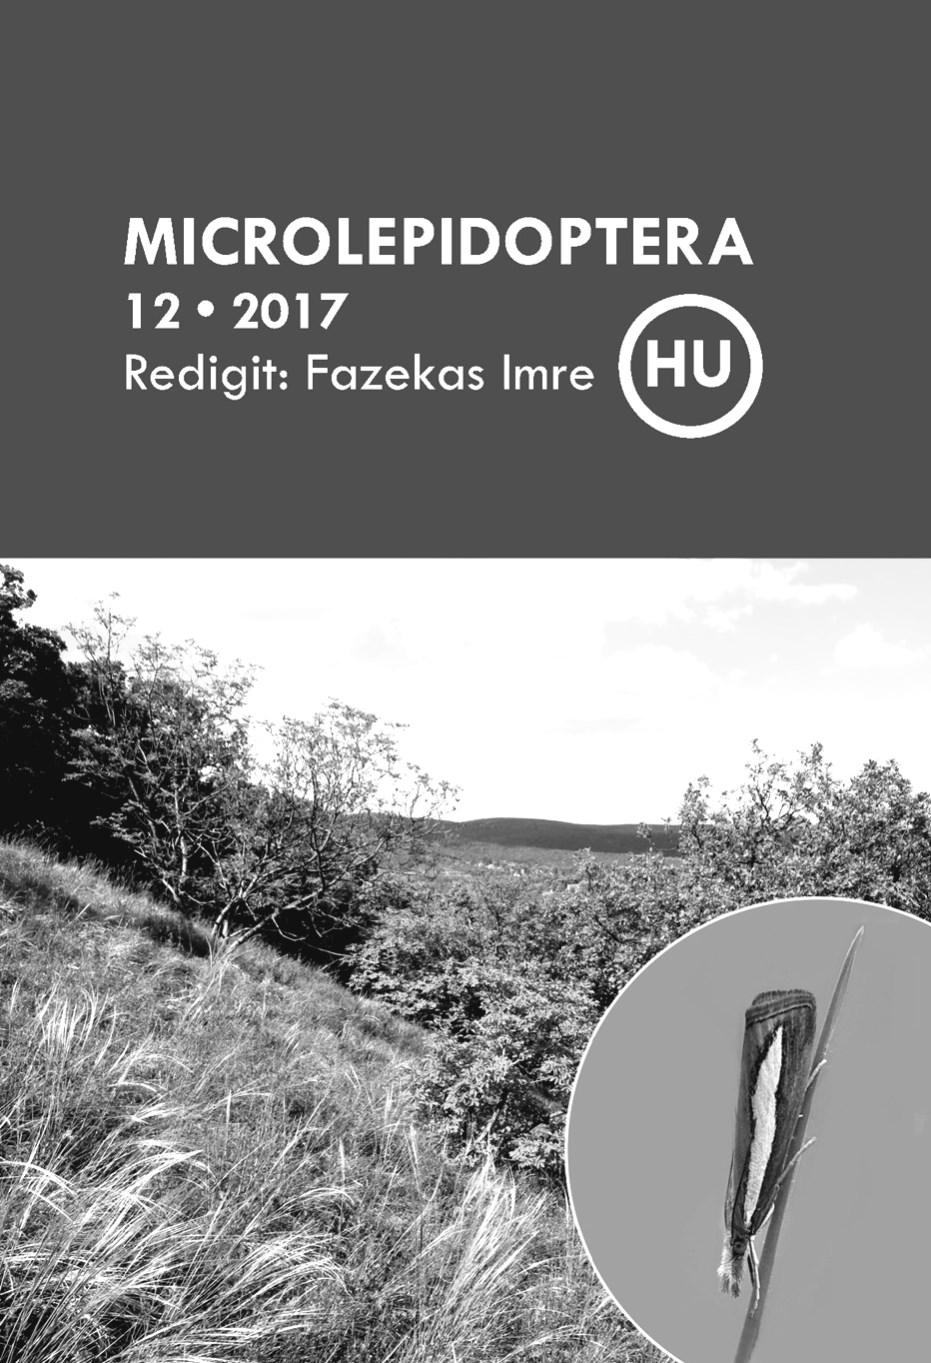 26 A megjelent kötetek pdf-ben is elérhetők: http://epa.oszk.hu/microlepidoptera http://www.